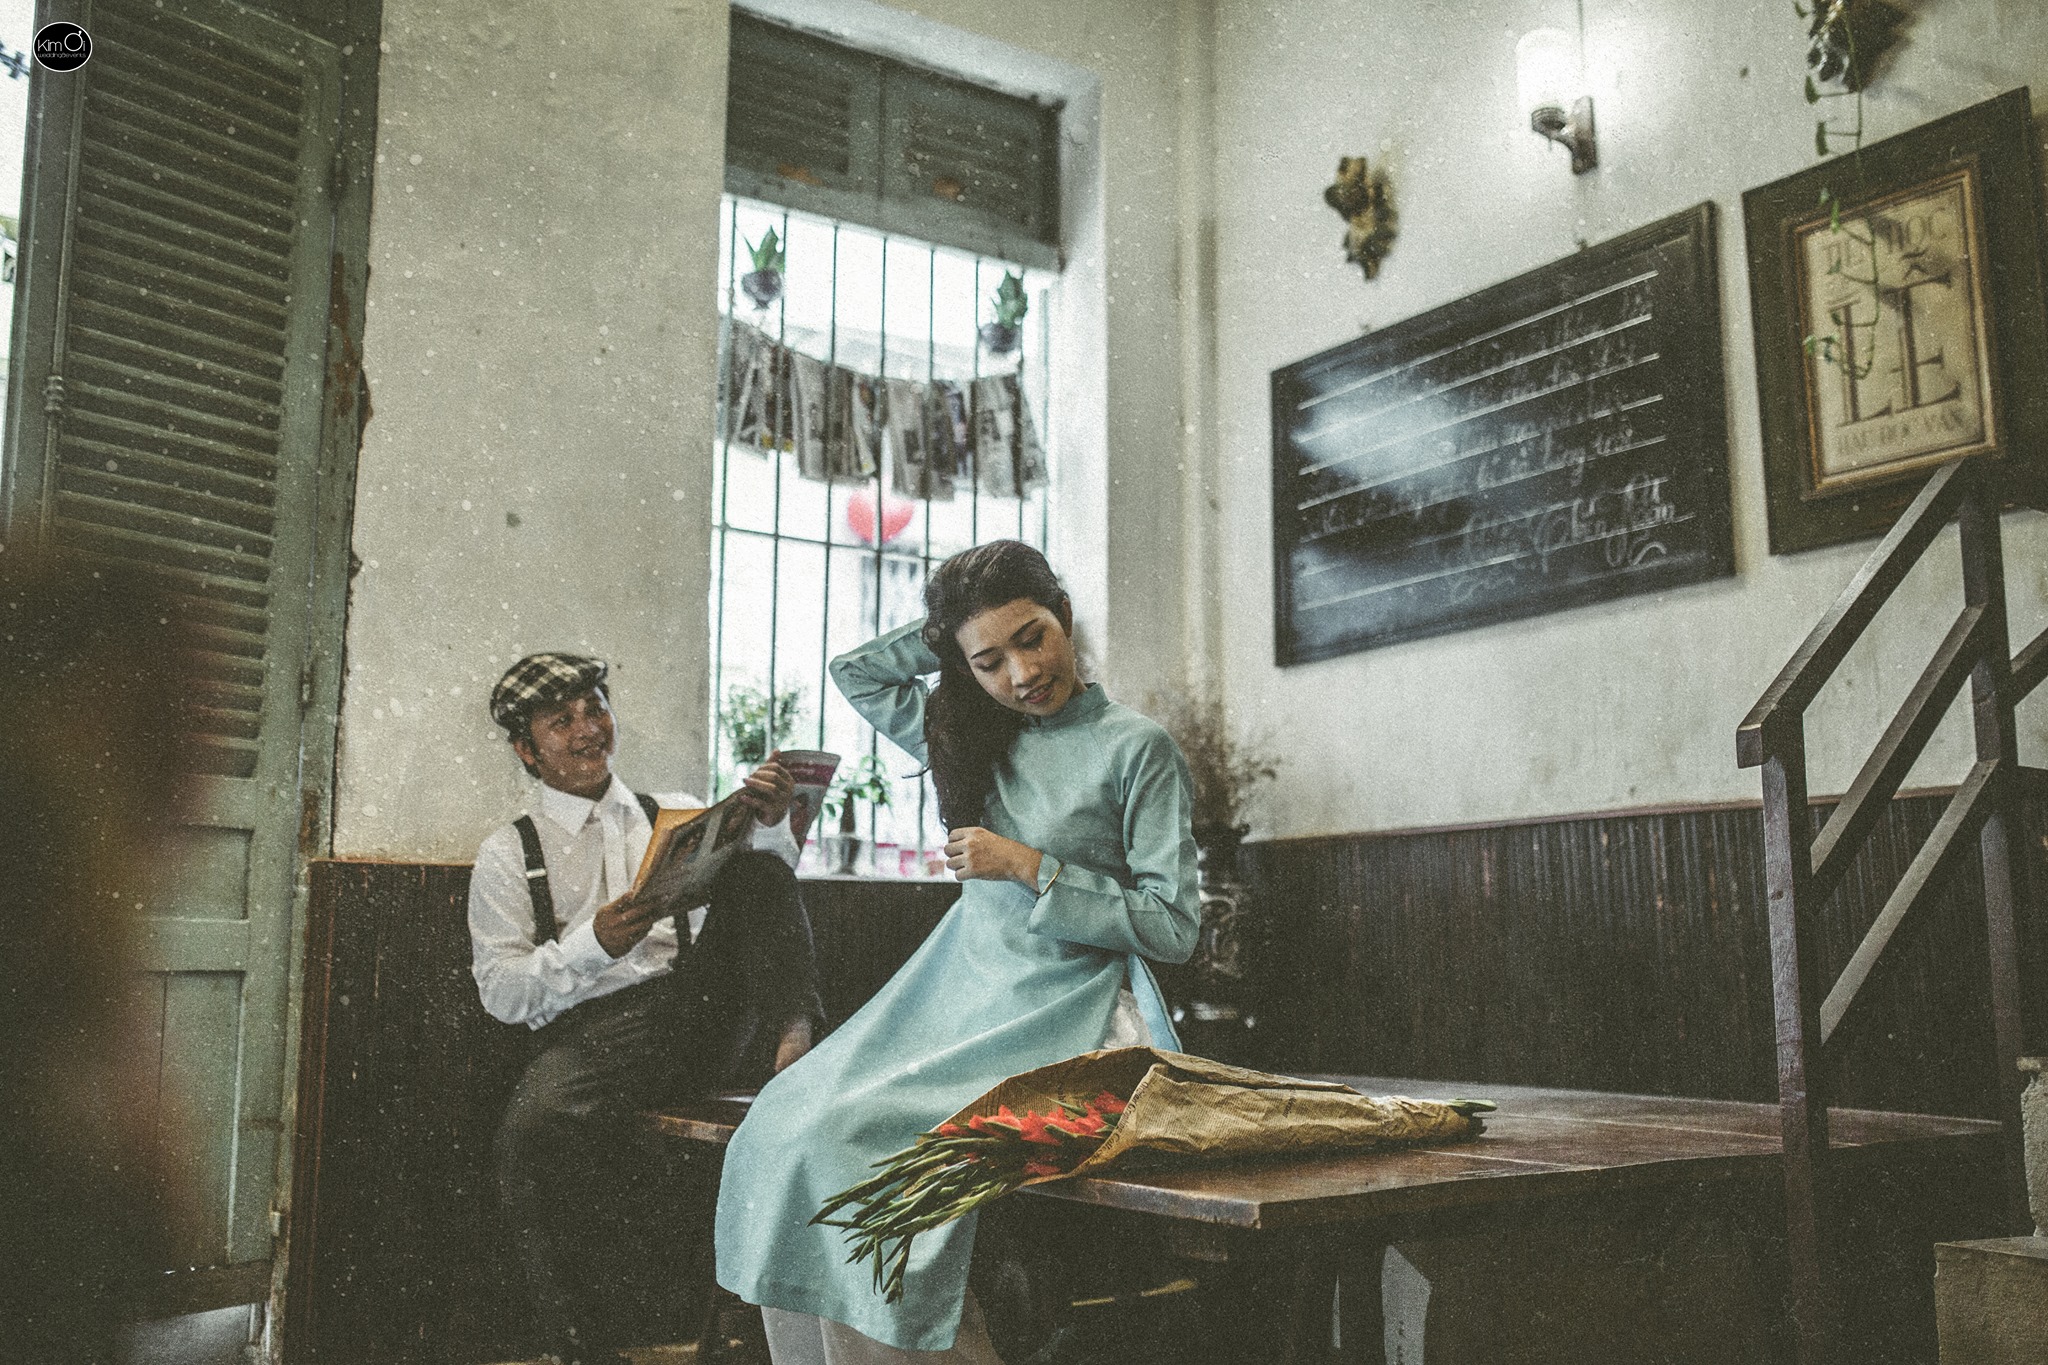 Tái hiện lại Sài Gòn những năm 80 thông qua bộ ảnh cưới là điều mà không ai có thể từ chối. Hãy đến khám phá tuyệt phẩm chụp ảnh cưới tại Sài Gòn, để tận hưởng cảm giác lạc trong không gian thời gian, trở về quá khứ và khám phá bí mật của thành phố.